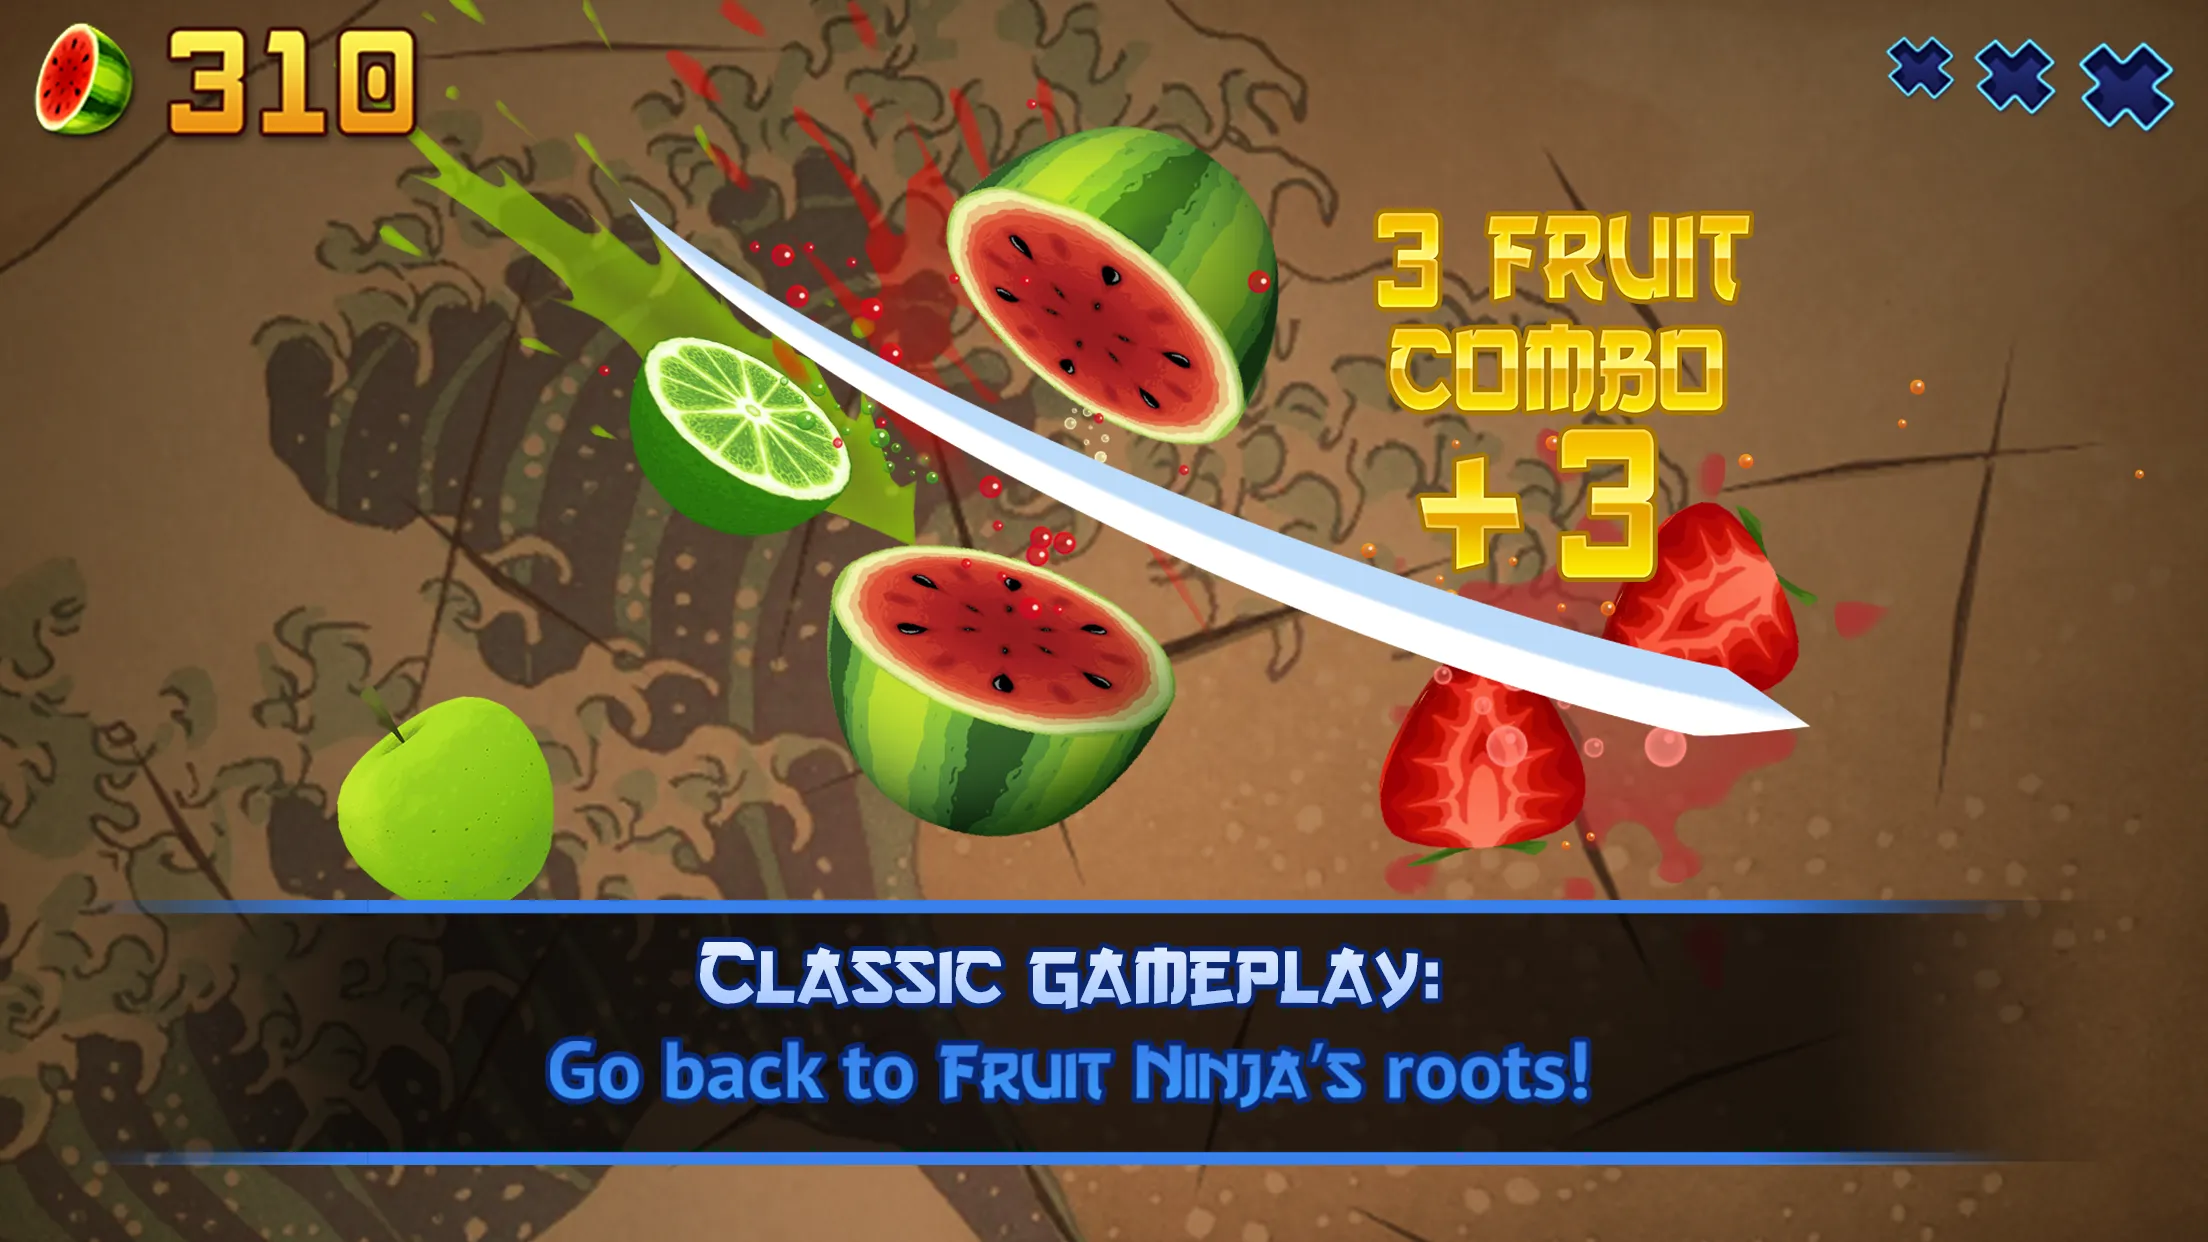 https://playstorefinder.com/wp-content/uploads/2022/06/Fruit-Ninja-Classic.webp